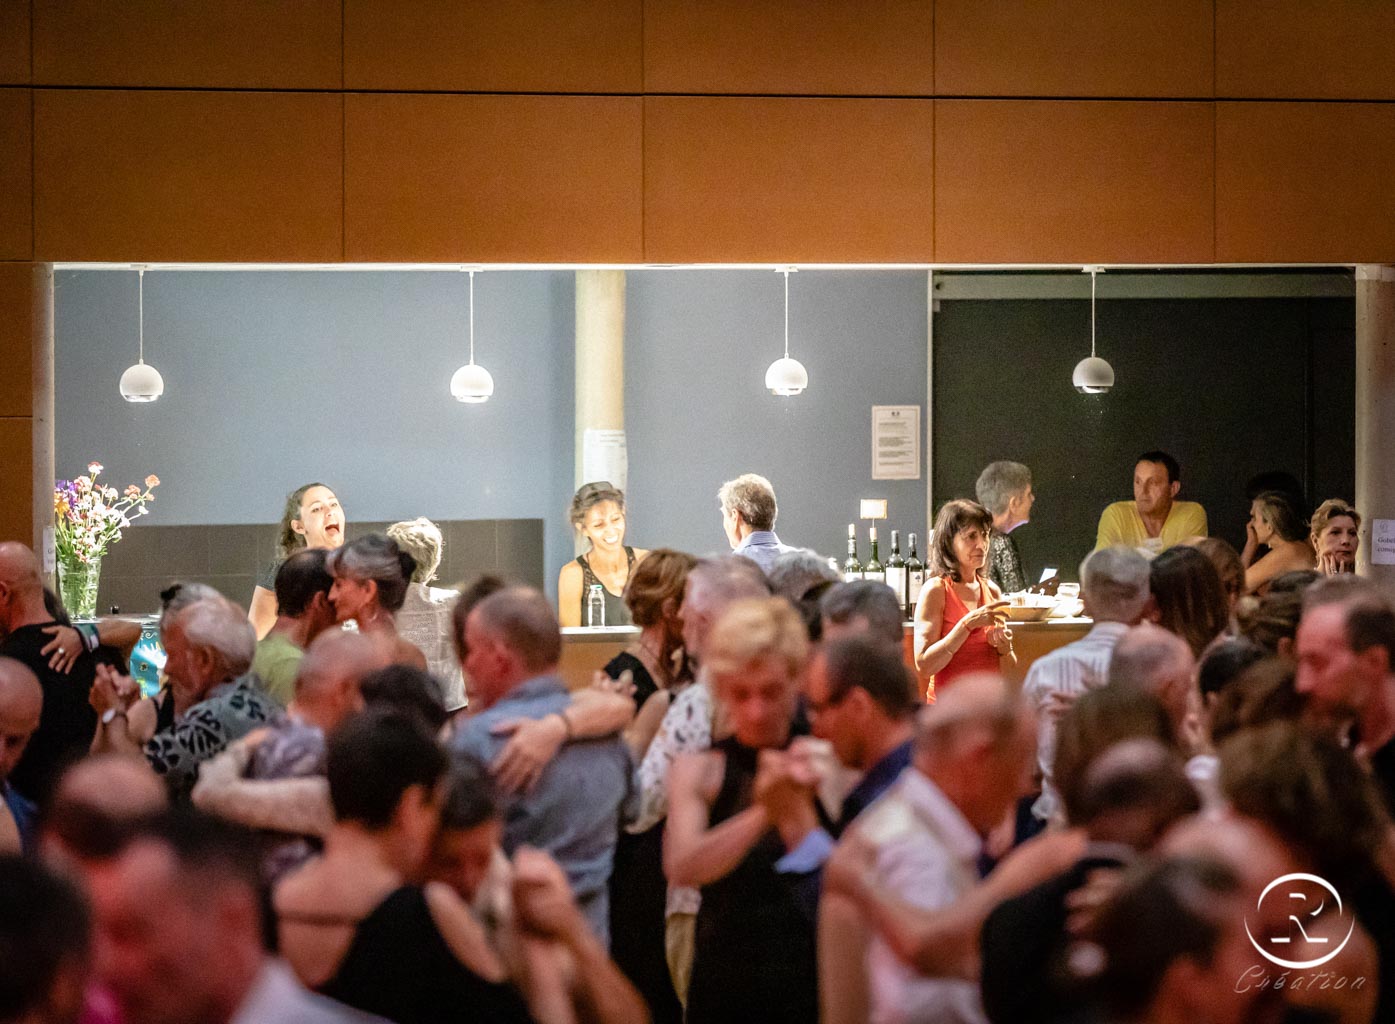 Milongas du 17ème Festival de Tango Saint Geniez d'Olt